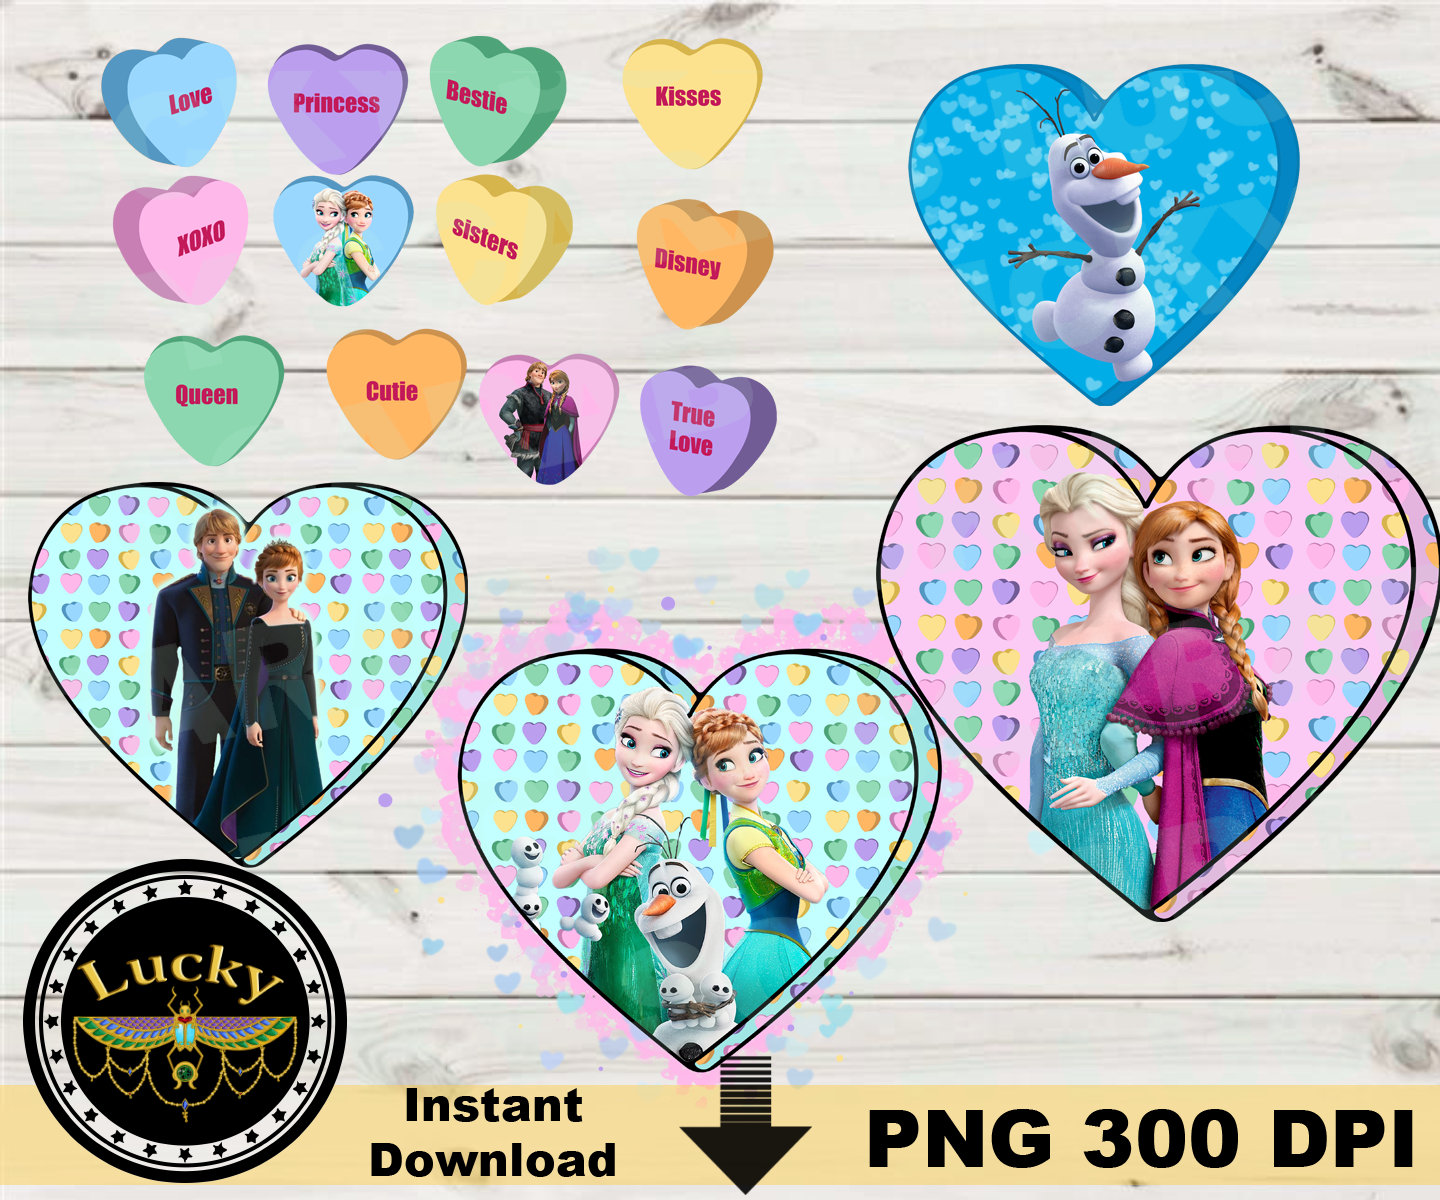 117 Glitter Hearts Sticker Fancy Small Heart Frozen Heart Pink Tone Blue  Tone Colorful Heart Epoxy Sticker Heart Label Heart Jewel Project 